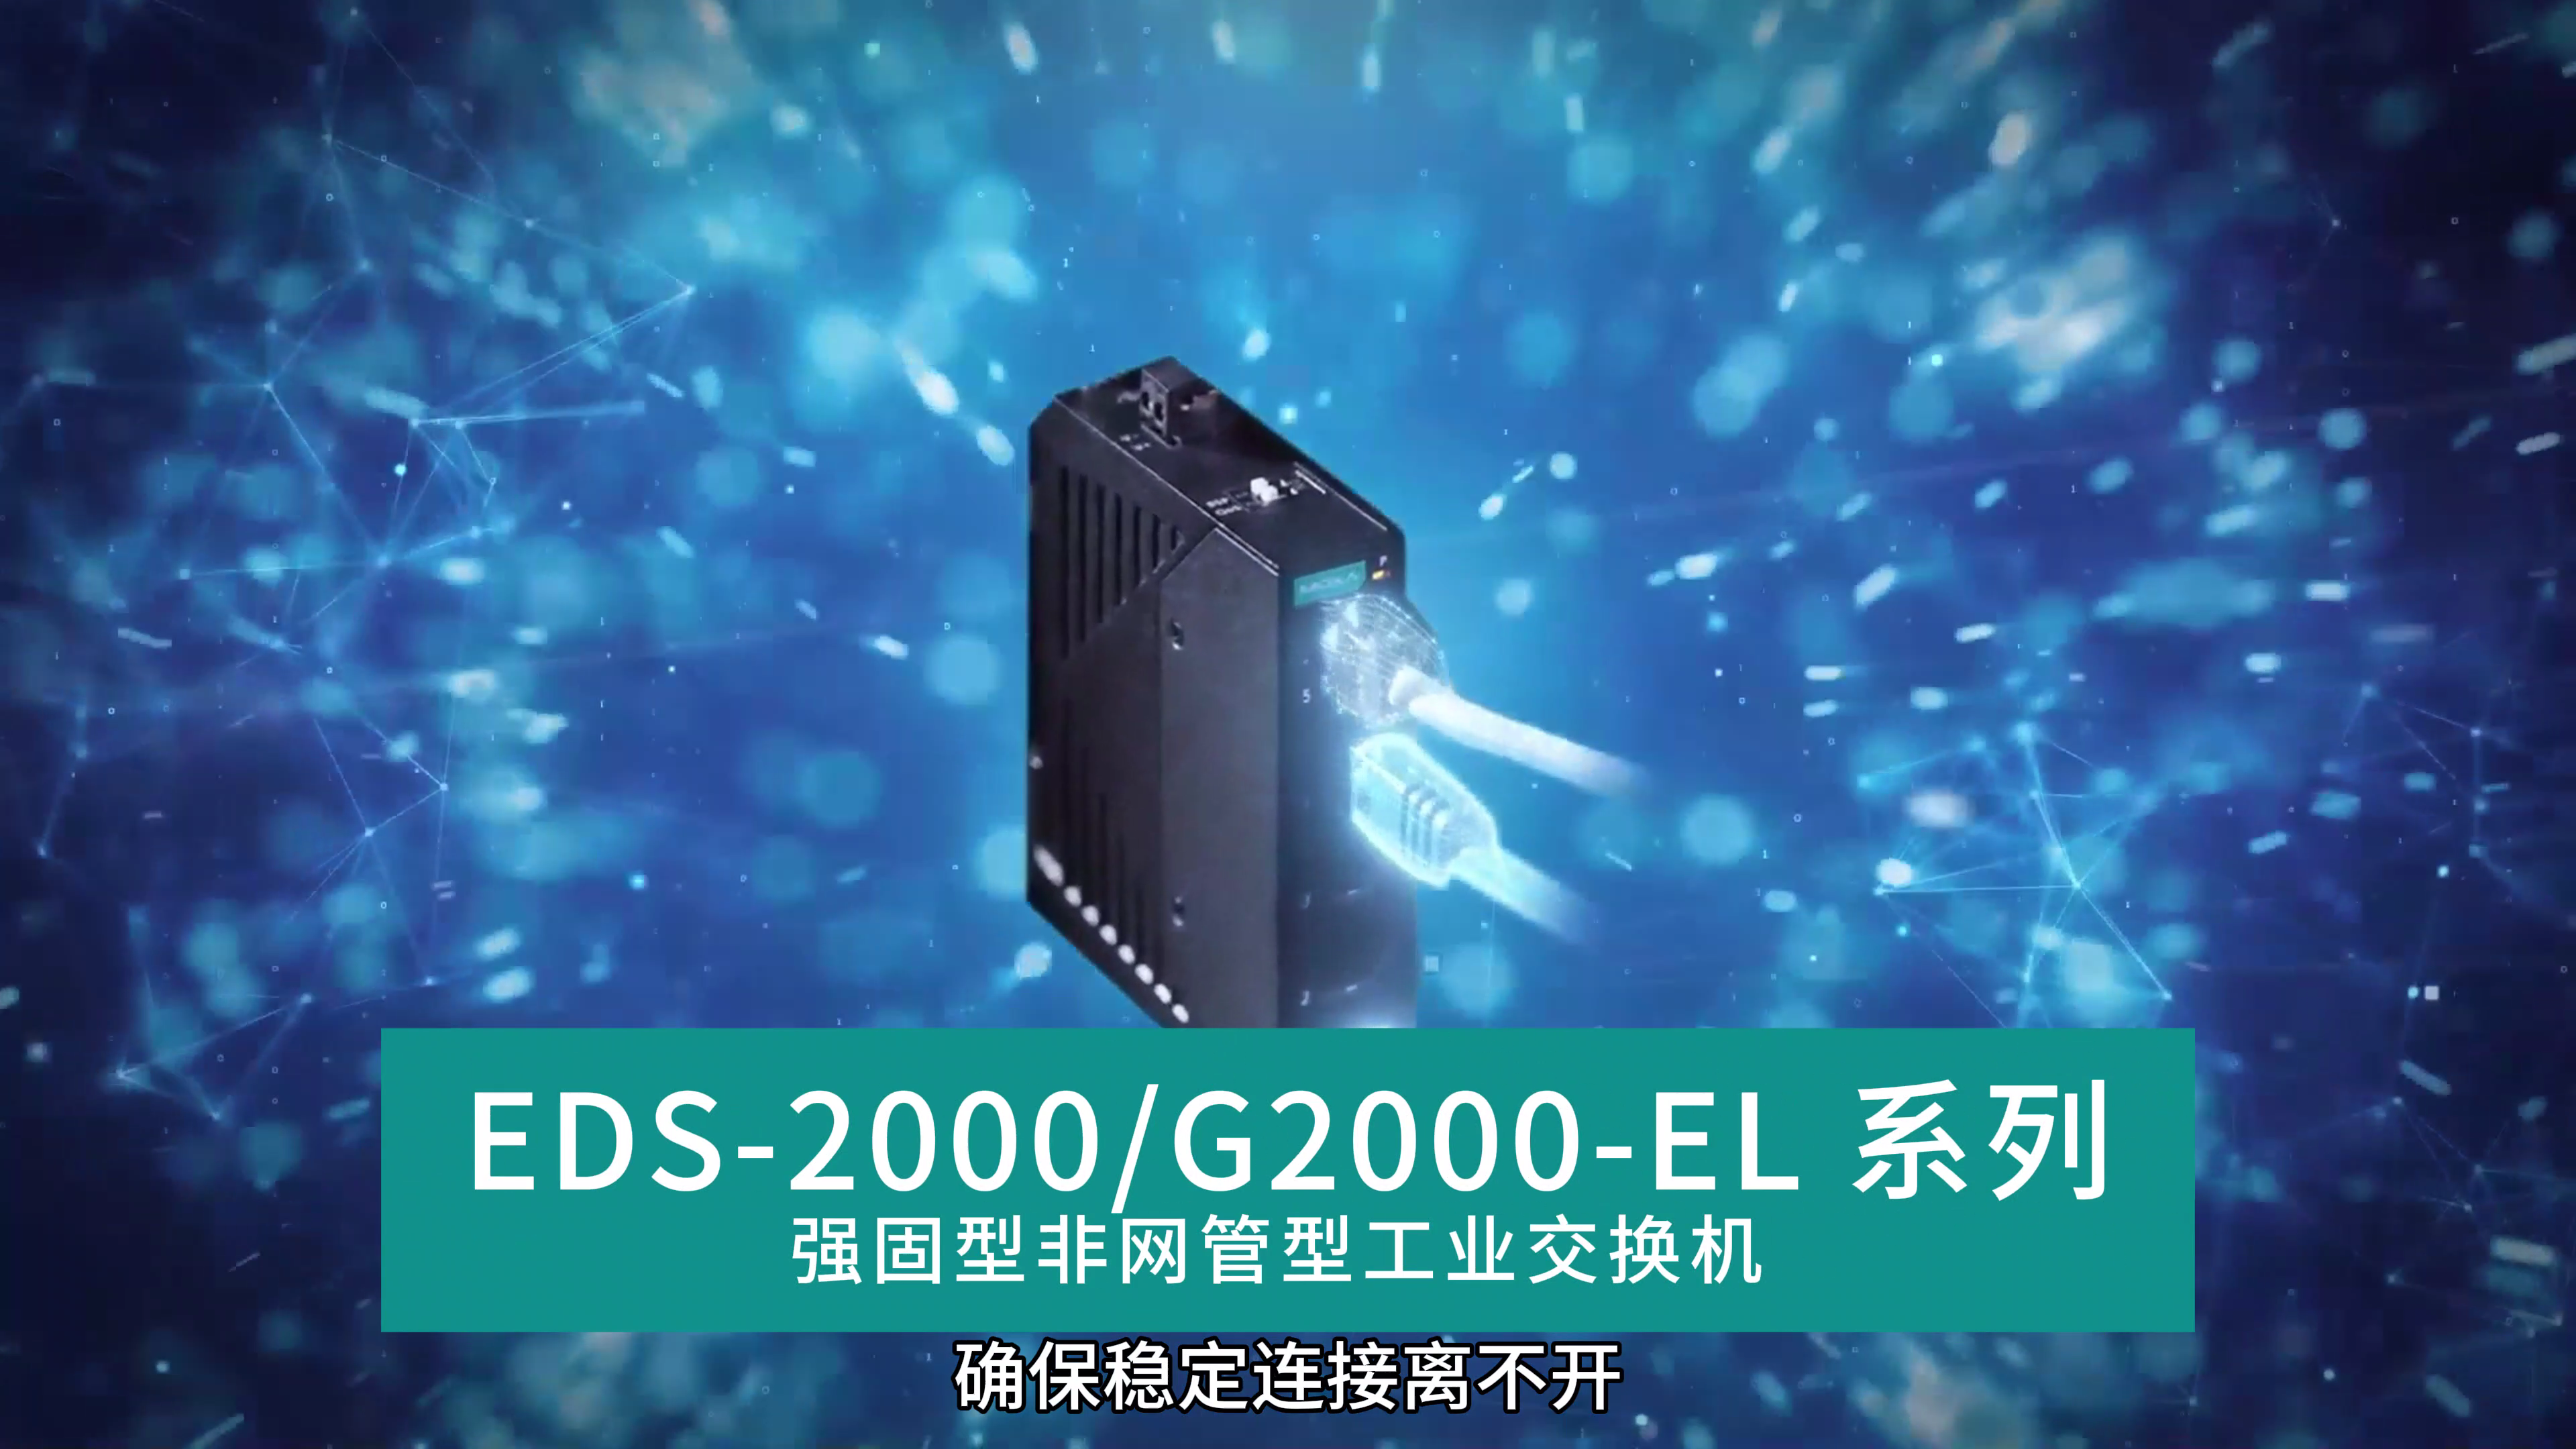 使用 EDS-2000/G2000-EL 系列非网管型交换机可靠地连接工业应用